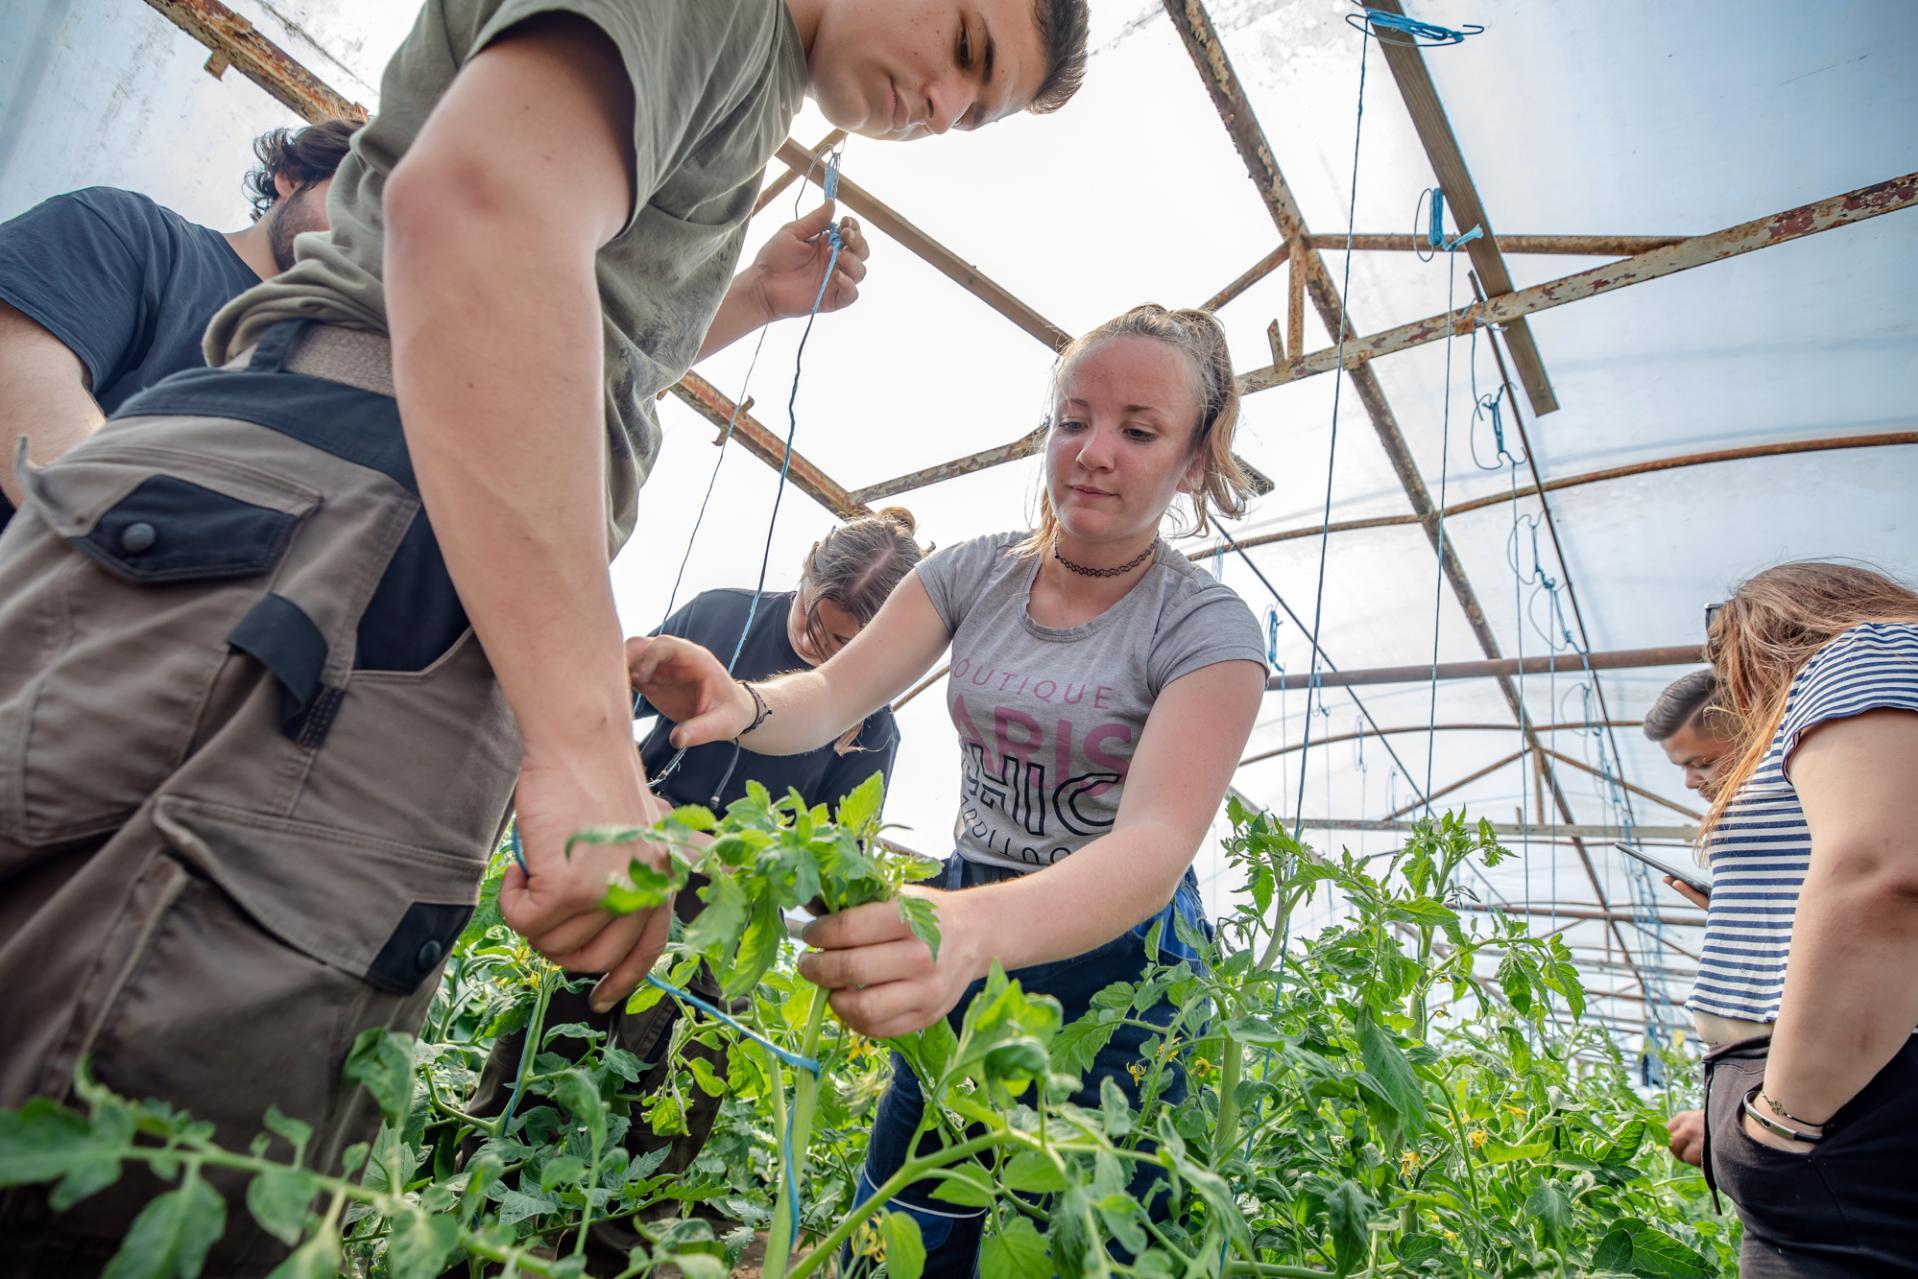 Fiatal felnőttek kertészkednek egy üvegházban, gondosan gondozzák a kis növényeket egy tiszta tető alatt, és egy ember a metszésre összpontosít.